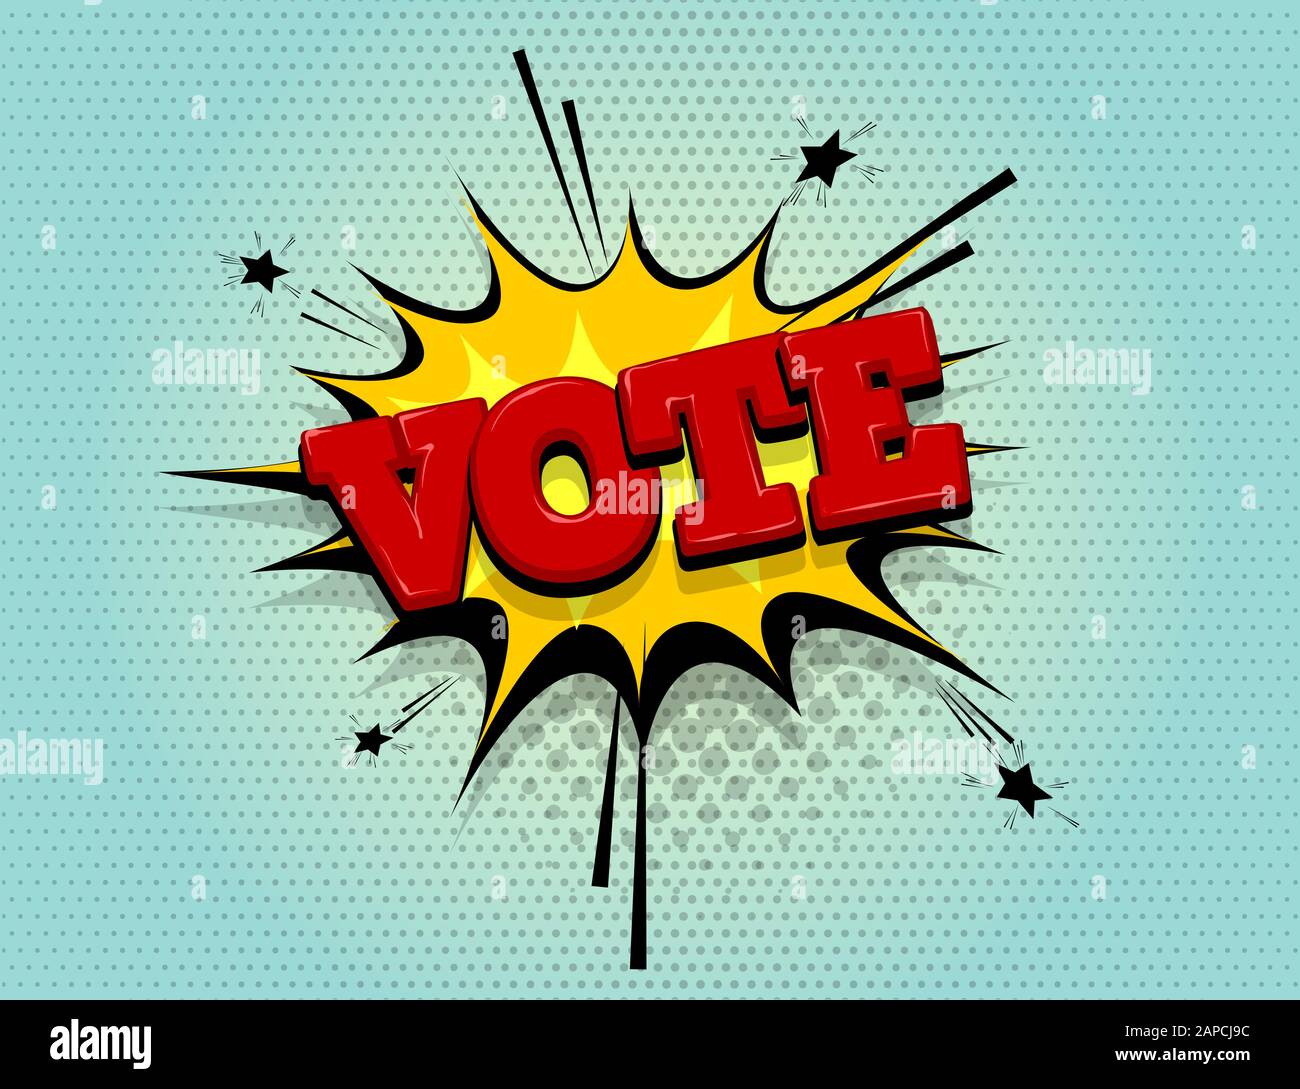 Ausleger Abstimmung Comic Text Sprechblase pop art Stock Vektor